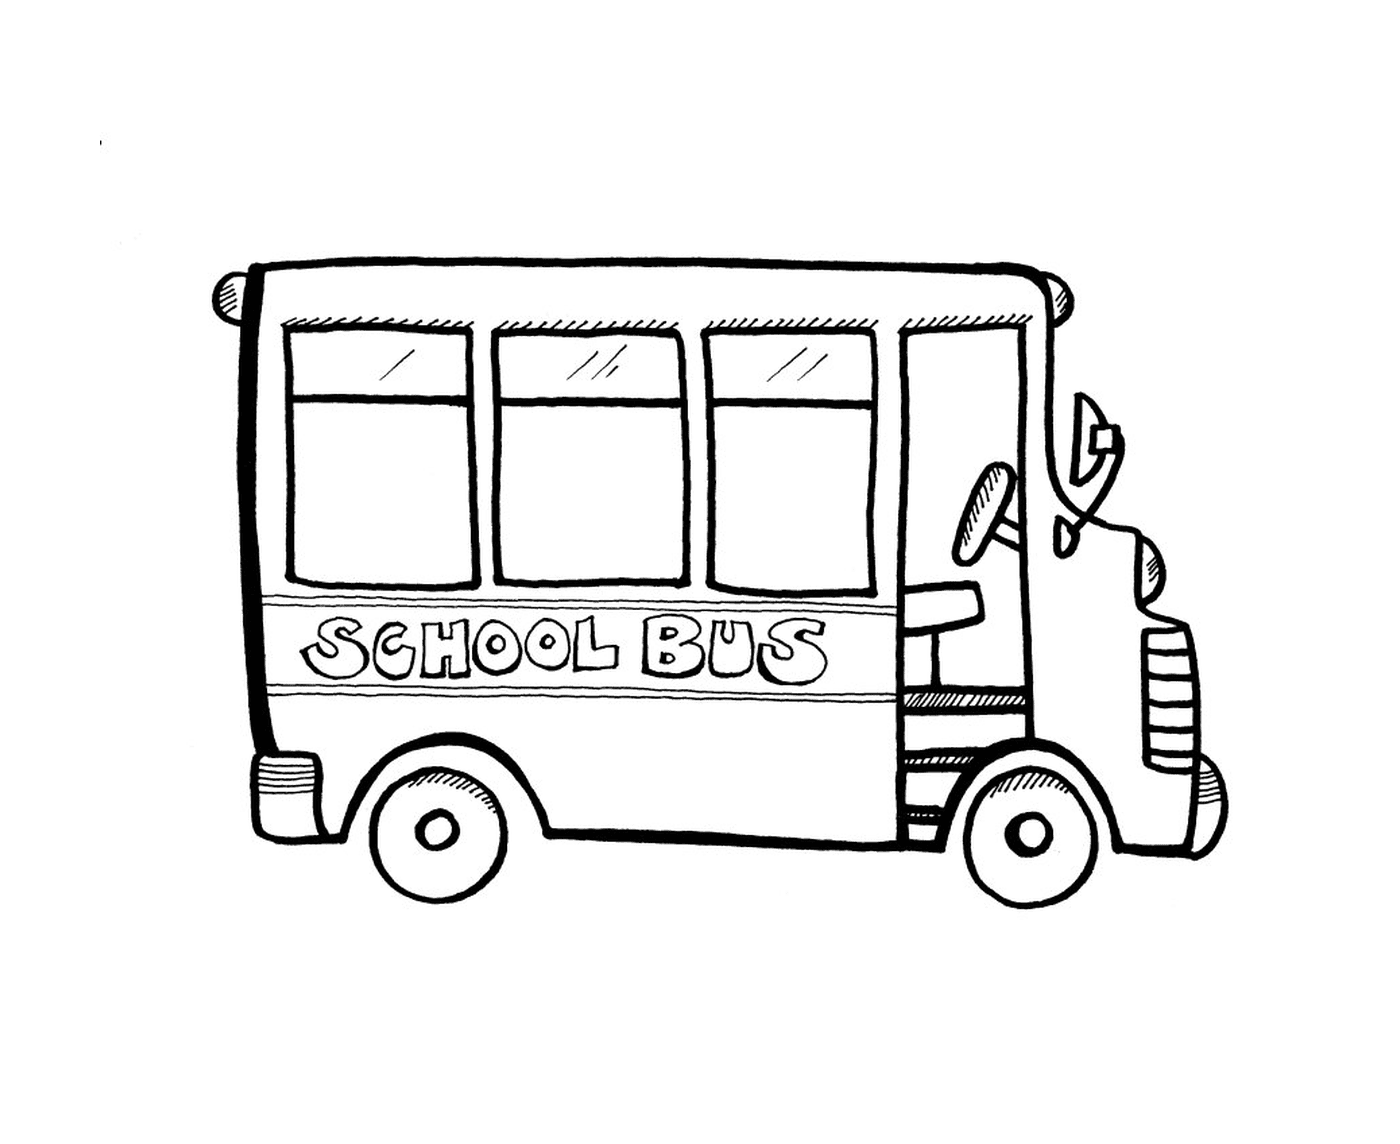  Autobus scolastico vuoto 